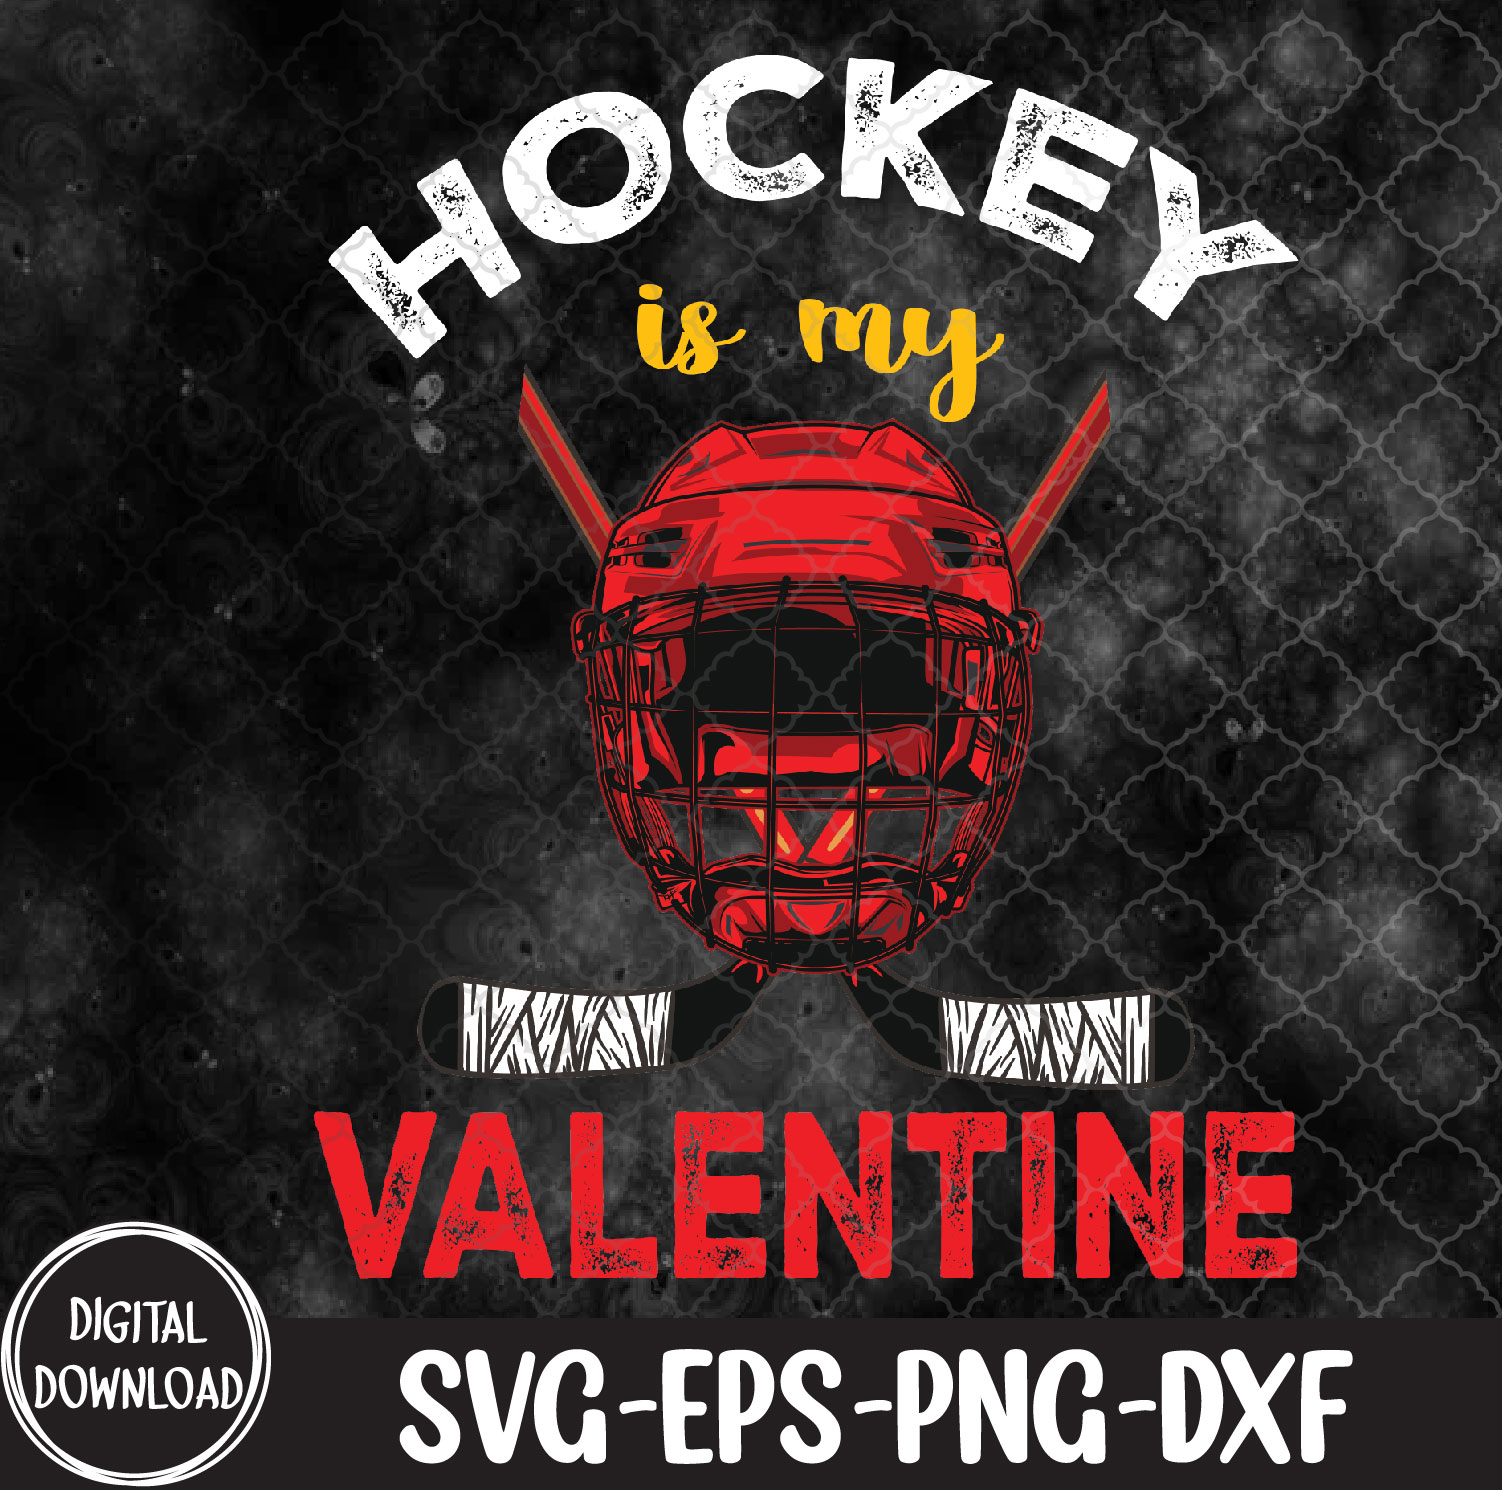 WTMNEW1512 09 31 Hockey Is My Valentine Hockey Lover Valentines Day svg, Svg, Eps, Png, Dxf